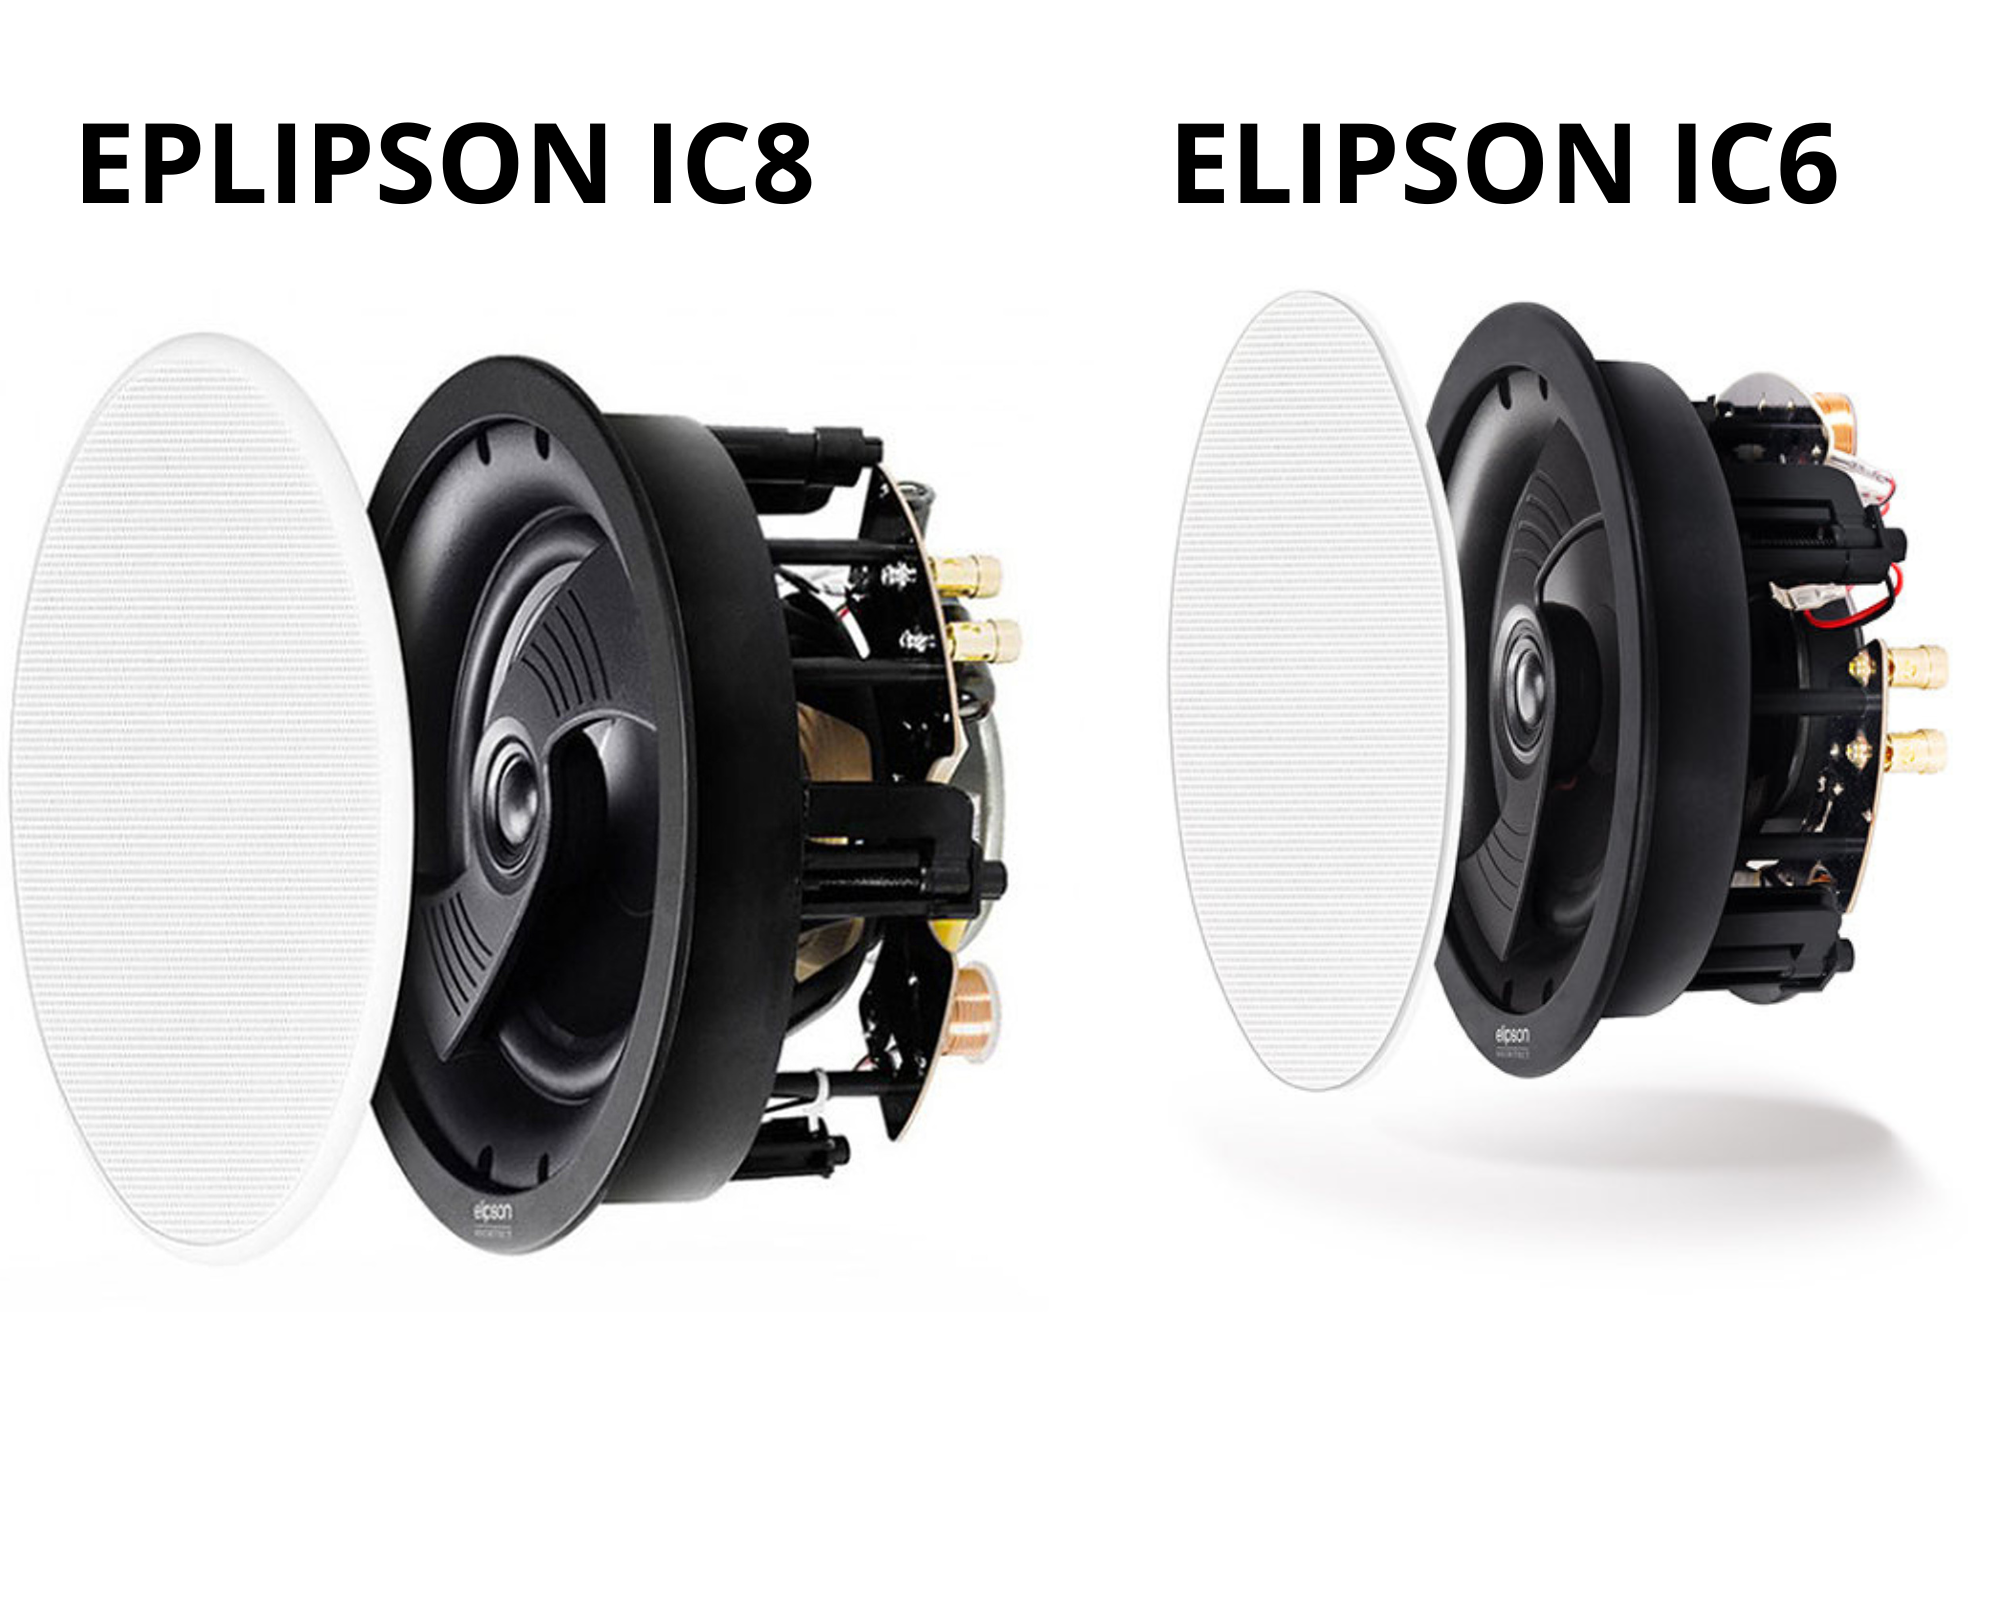 Elipson IC6  IC8 enceintres encastrables reproduction sonore haute qualité design discret Idéal pour les environnements professionnels harmonisent espace